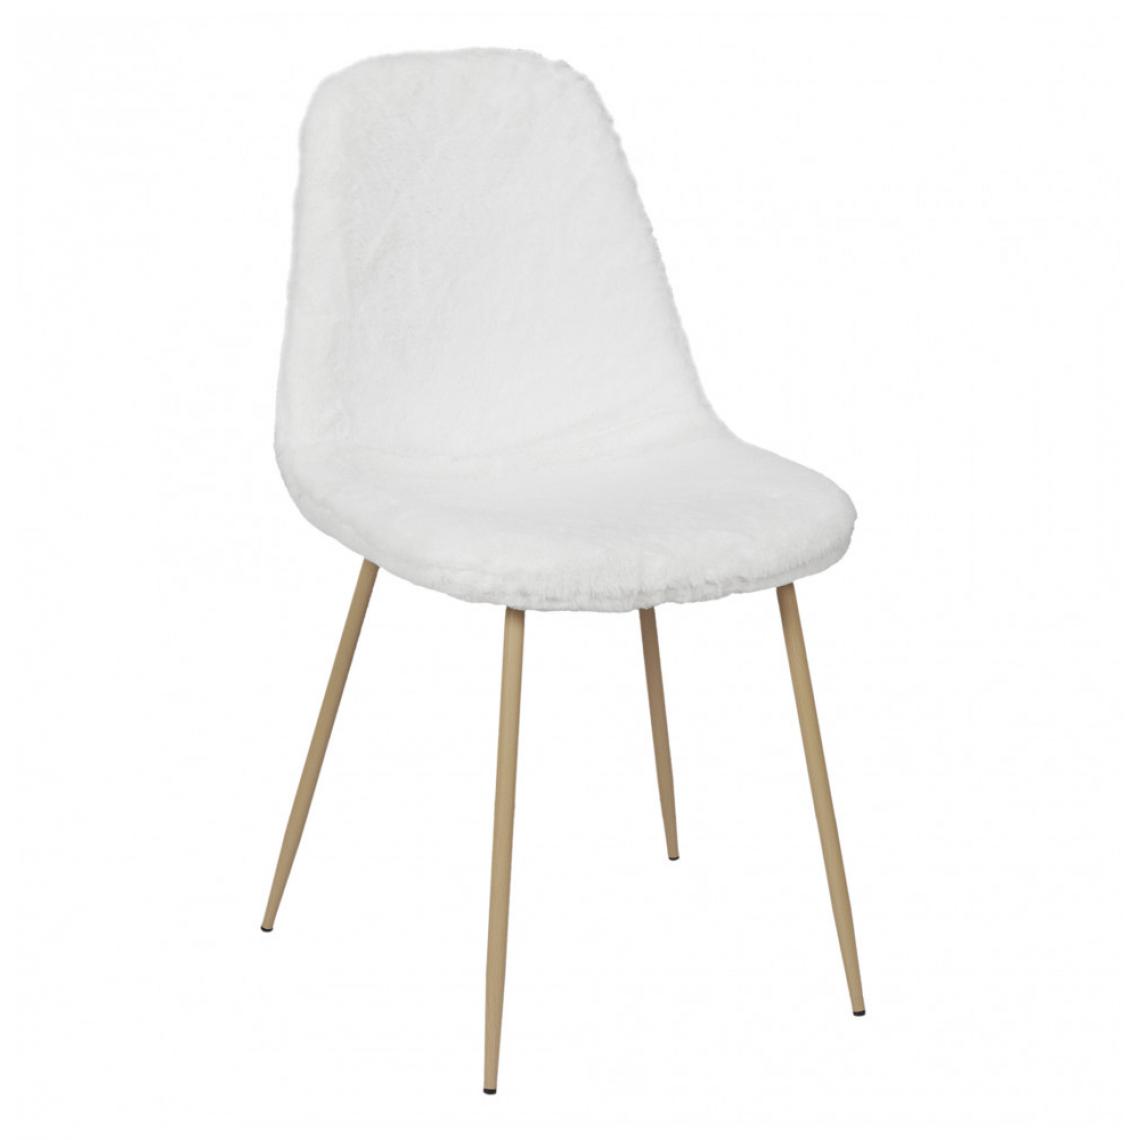 Ac-Deco - Chaise - imitation fourrure - L 54.7 cm x l 44,1 cm x H 85,2 cm - Aurea - Blanc - Chaises